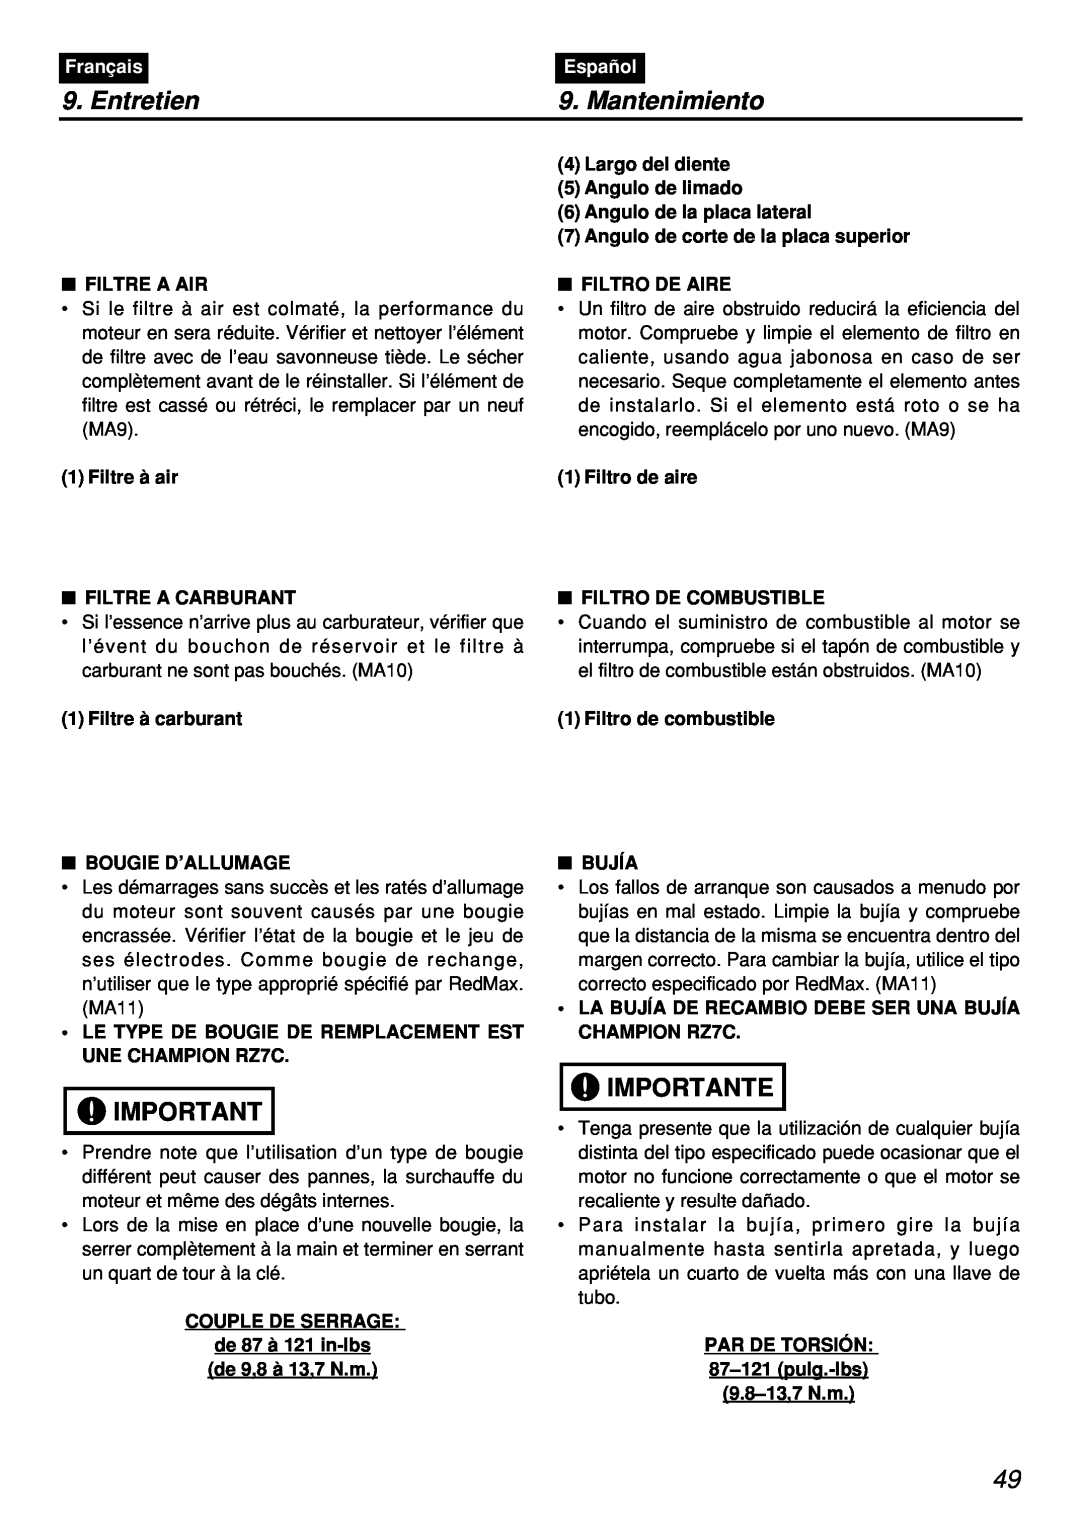 Zenoah PSZ2401, PSZ2401-CA, PSZ2401-CA, PSZ2401 manual Entretien, Mantenimiento, Importante, Français, Español 